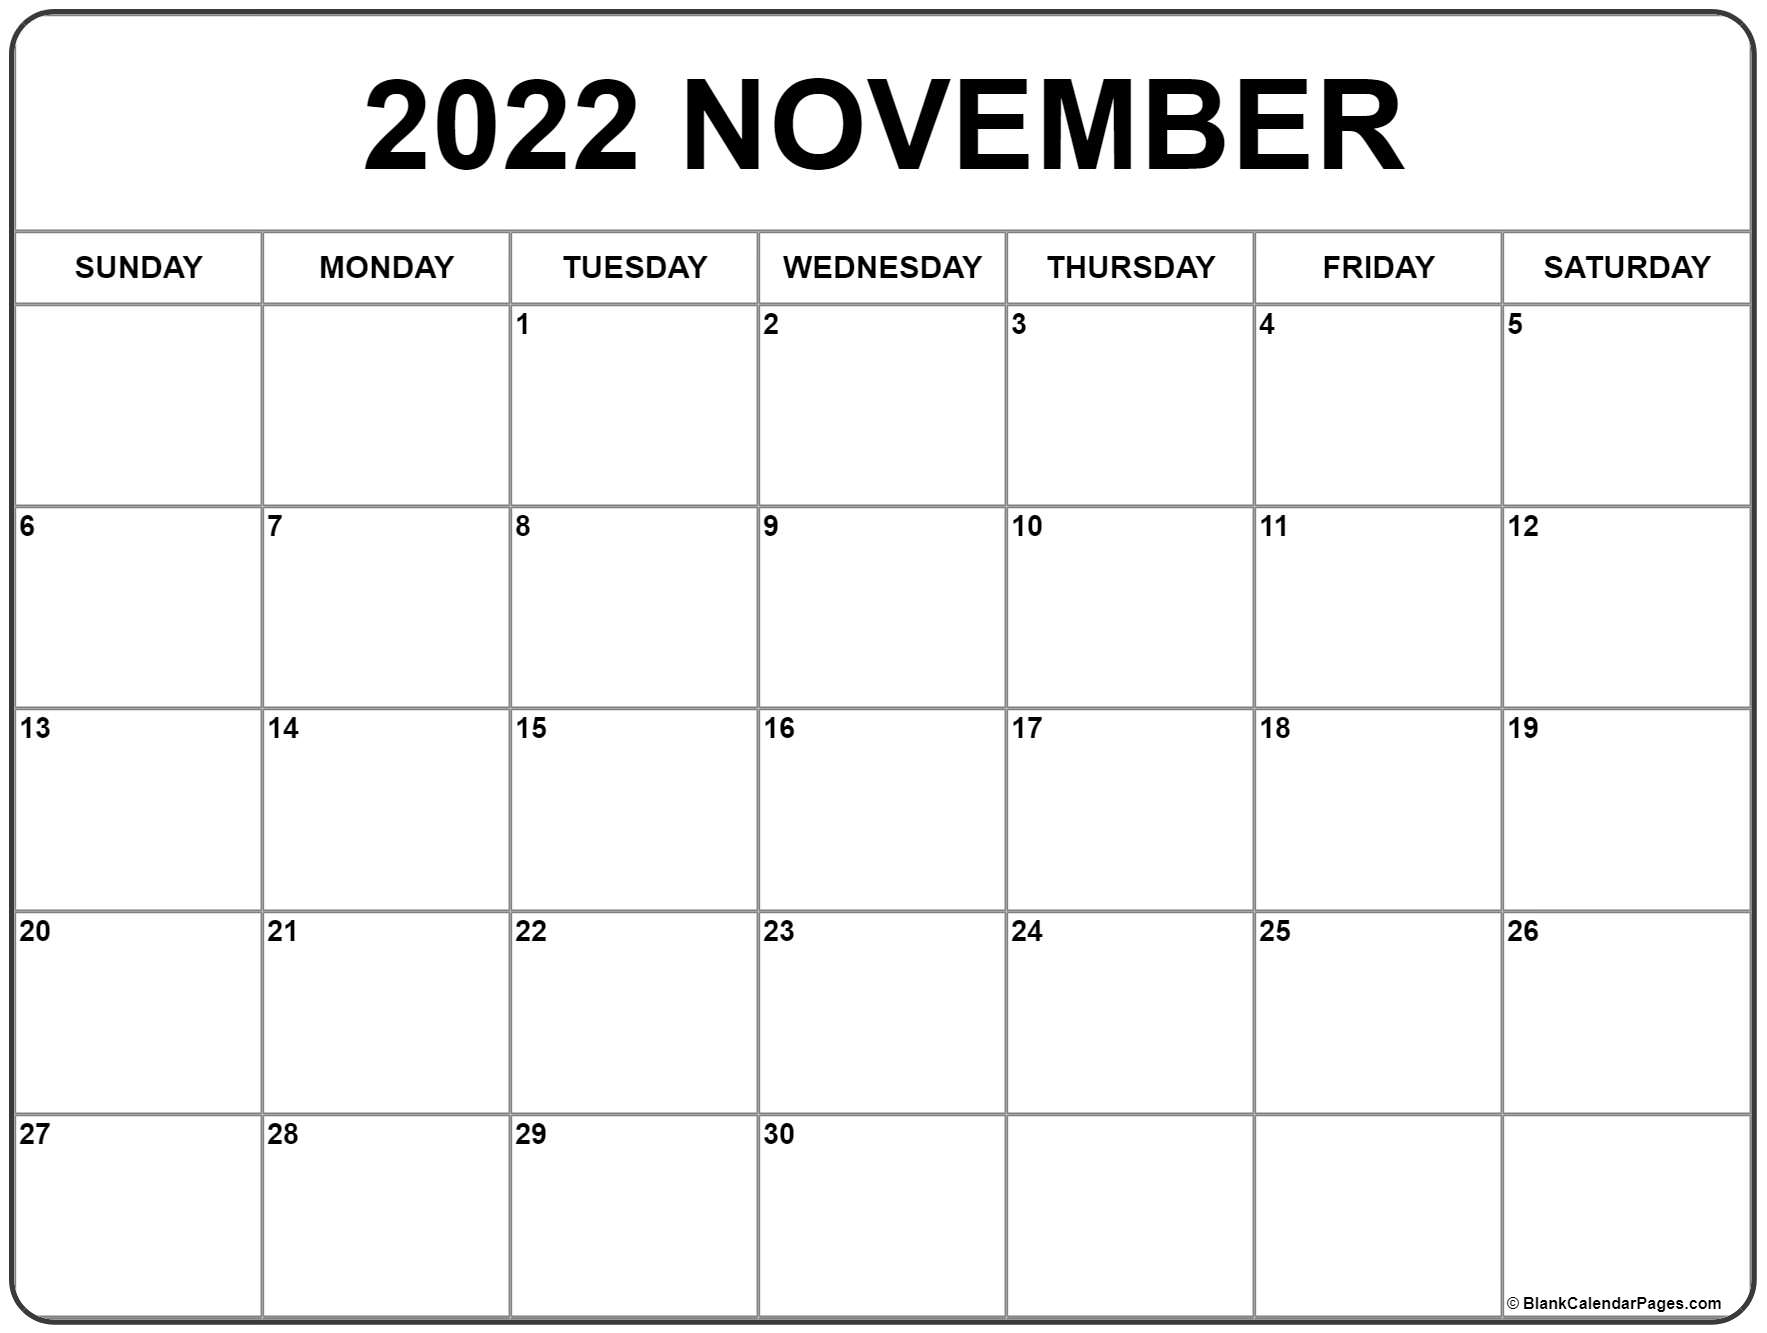 November 2022 Calendar | Free Printable Calendar Templates